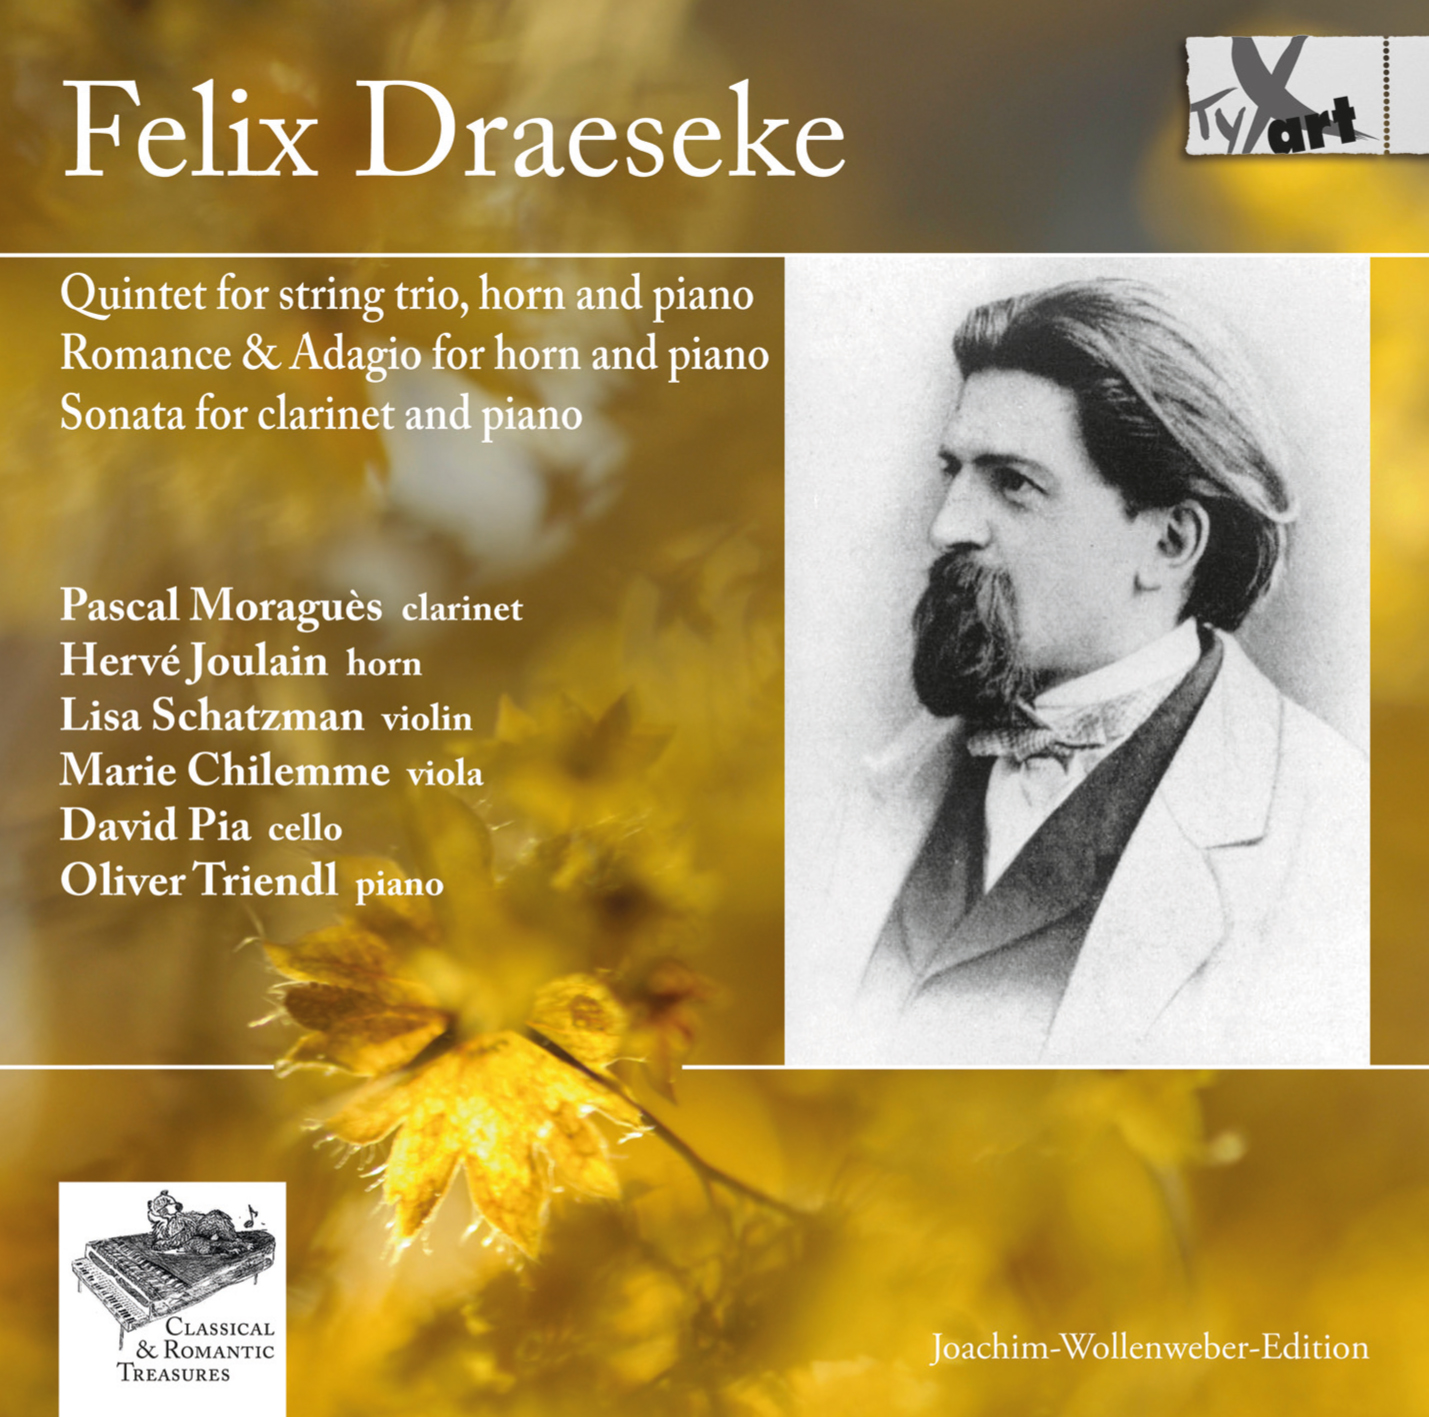 Felix Draeseke: Kammermusikwerke op.48, op.32, op.31, op.38